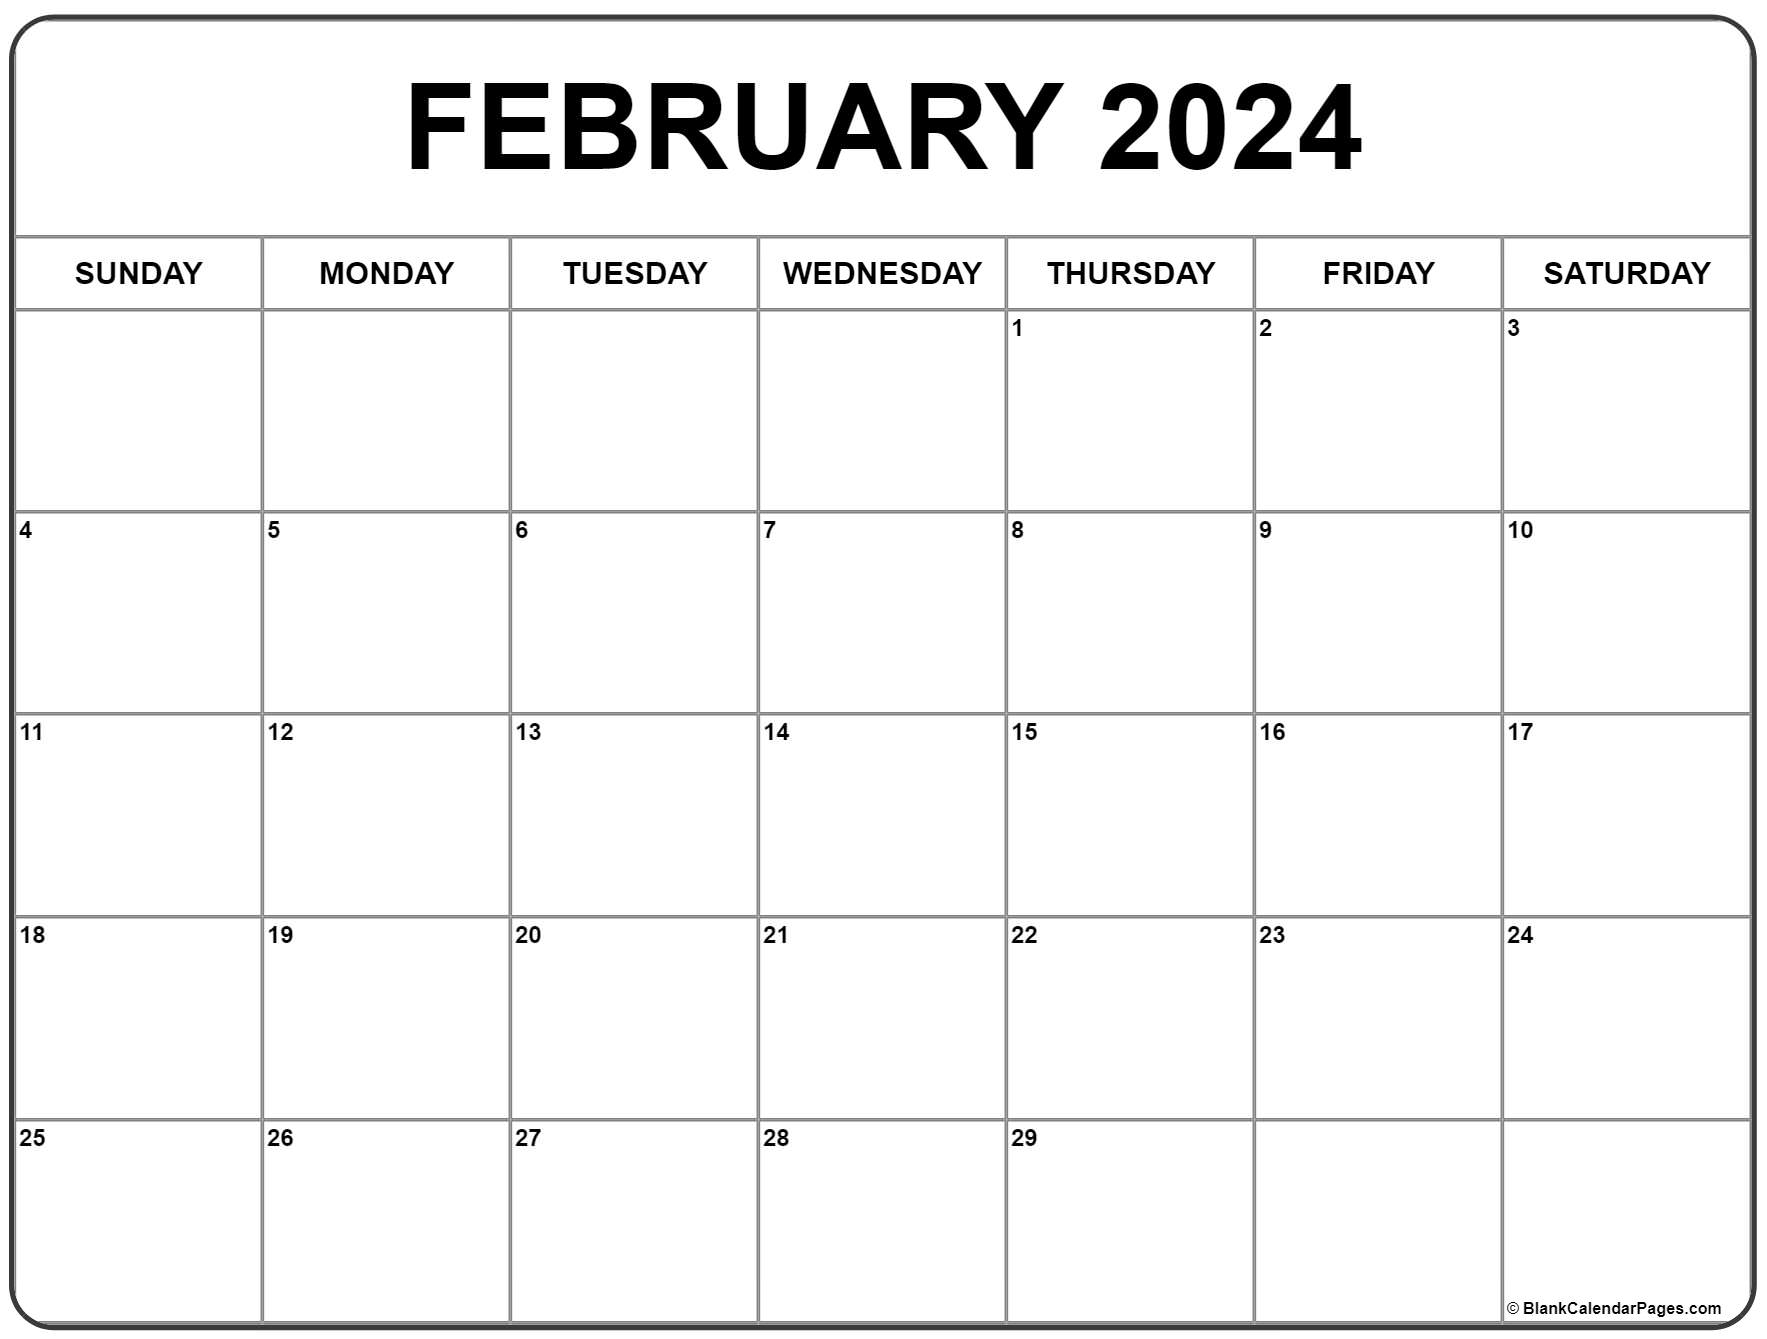 February 2024 Calendar | Free Printable Calendar for Printable Free February 2024 Calendar